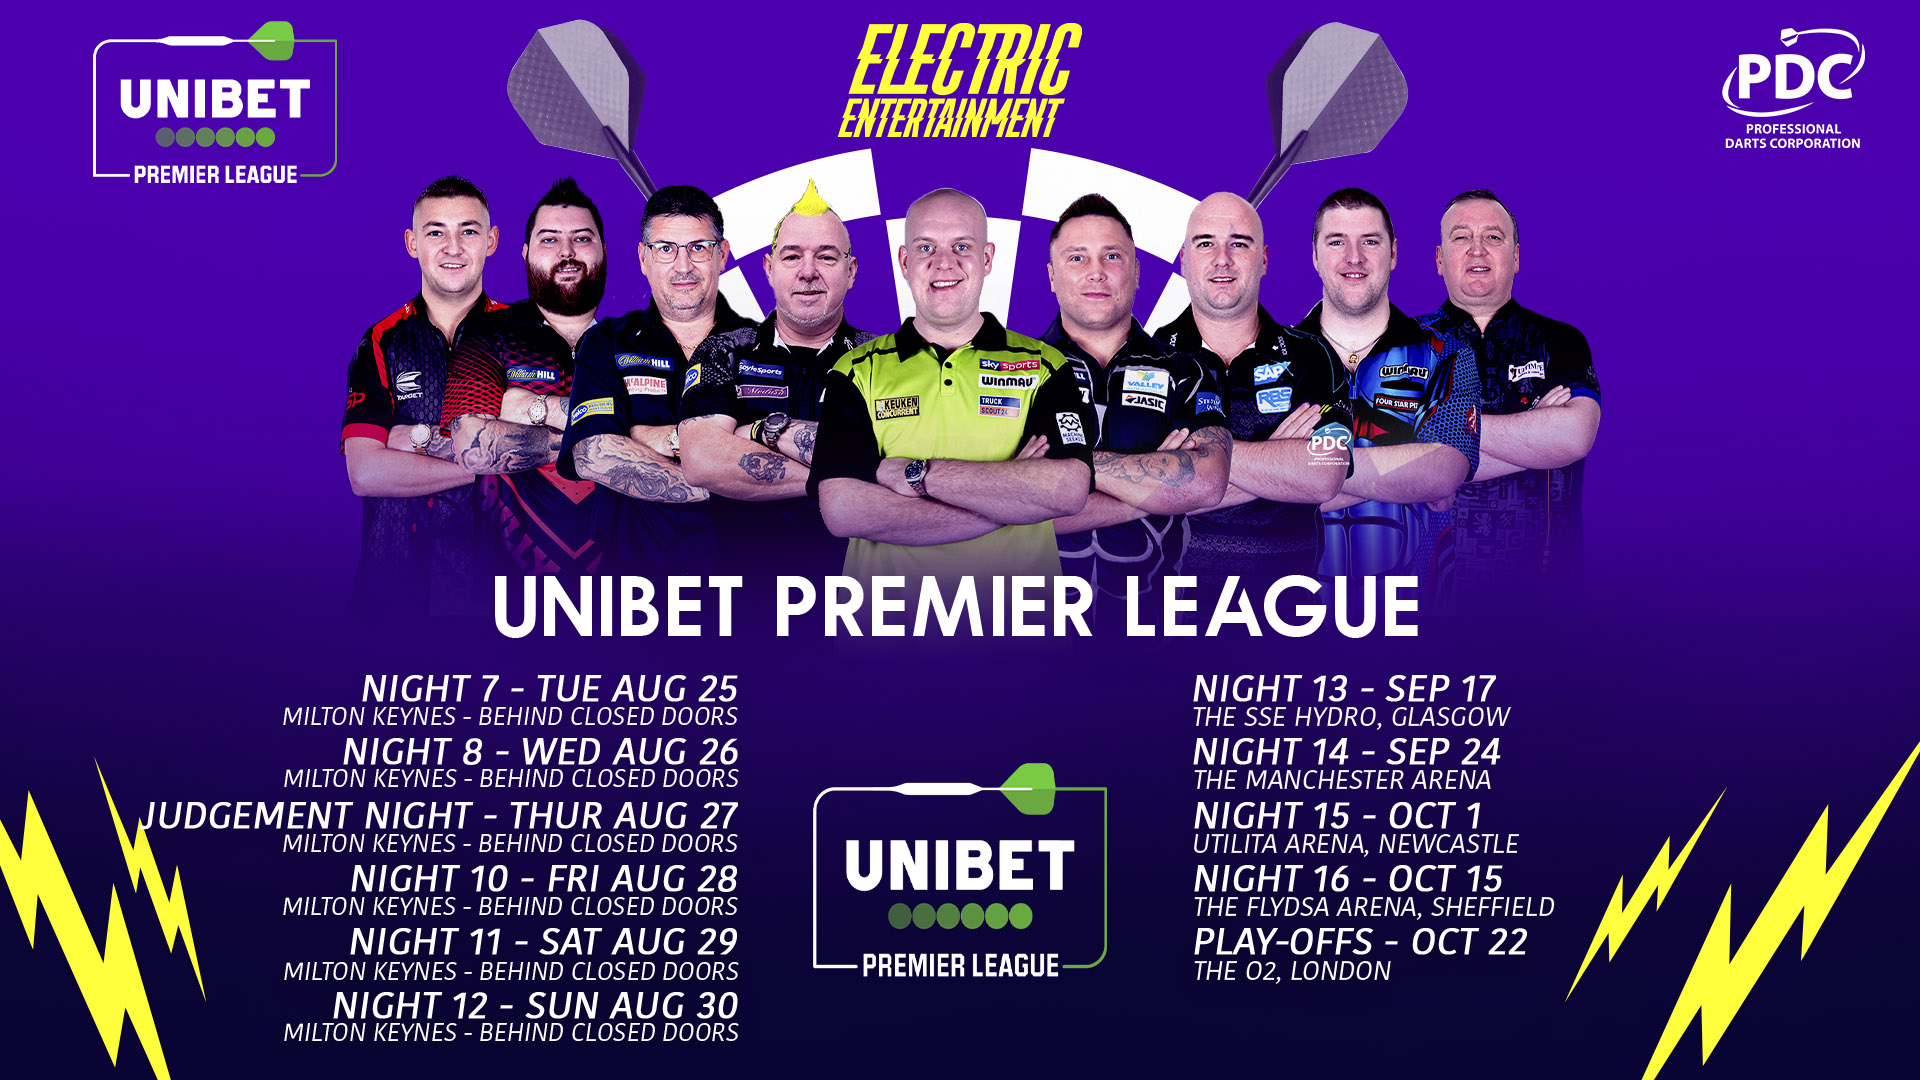 Revised 2020 Unibet Premier League schedule confirmed | PDC